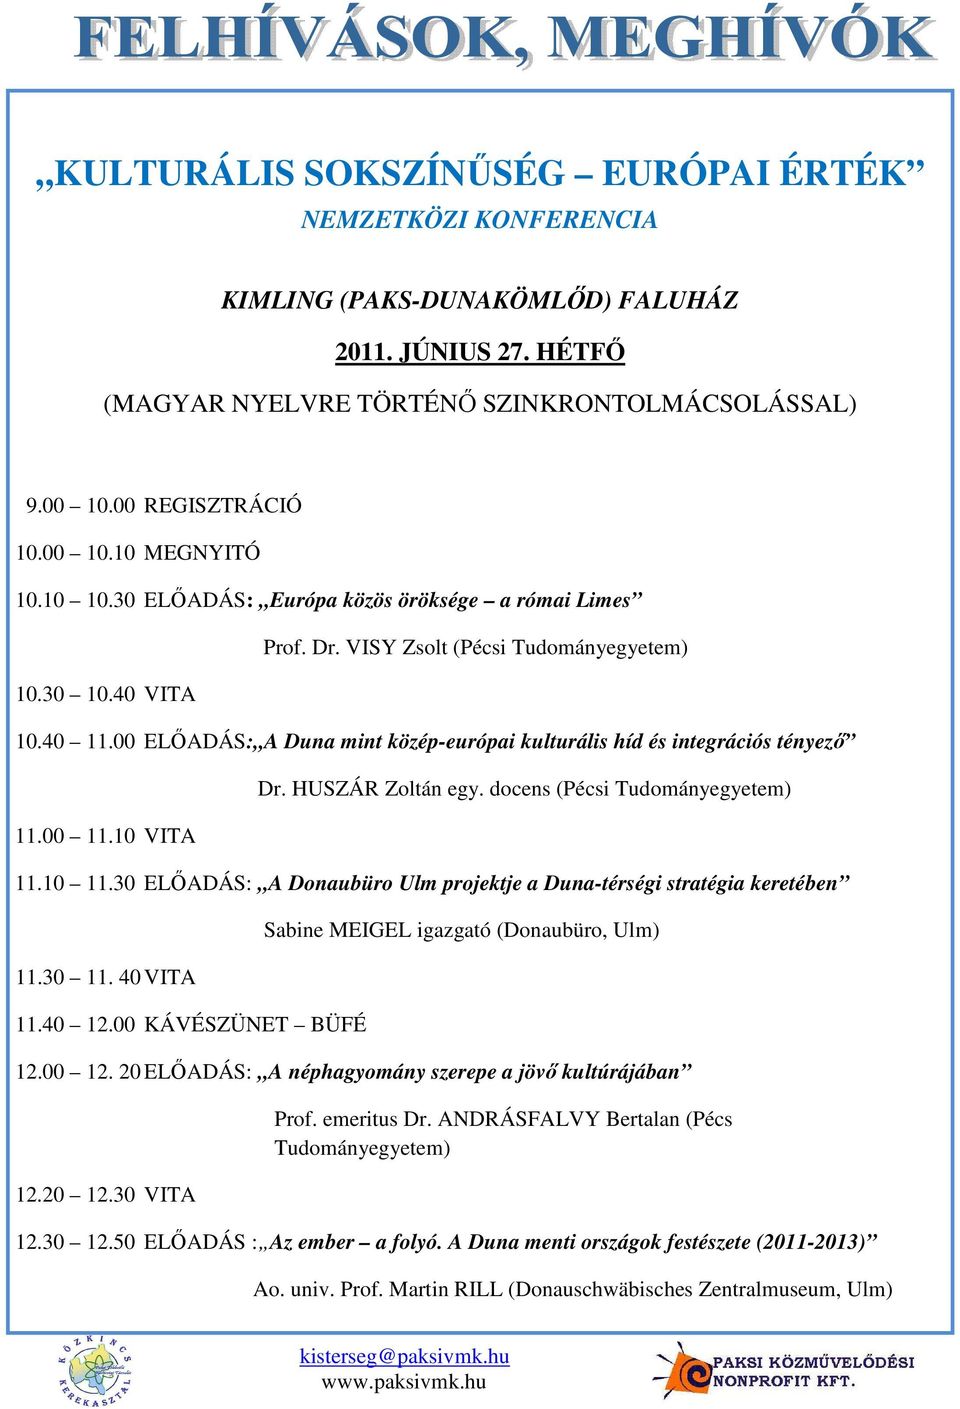 00 ELİADÁS: A Duna mint közép-európai kulturális híd és integrációs tényezı 11.00 11.10 VITA Dr. HUSZÁR Zoltán egy. docens (Pécsi Tudományegyetem) 11.10 11.